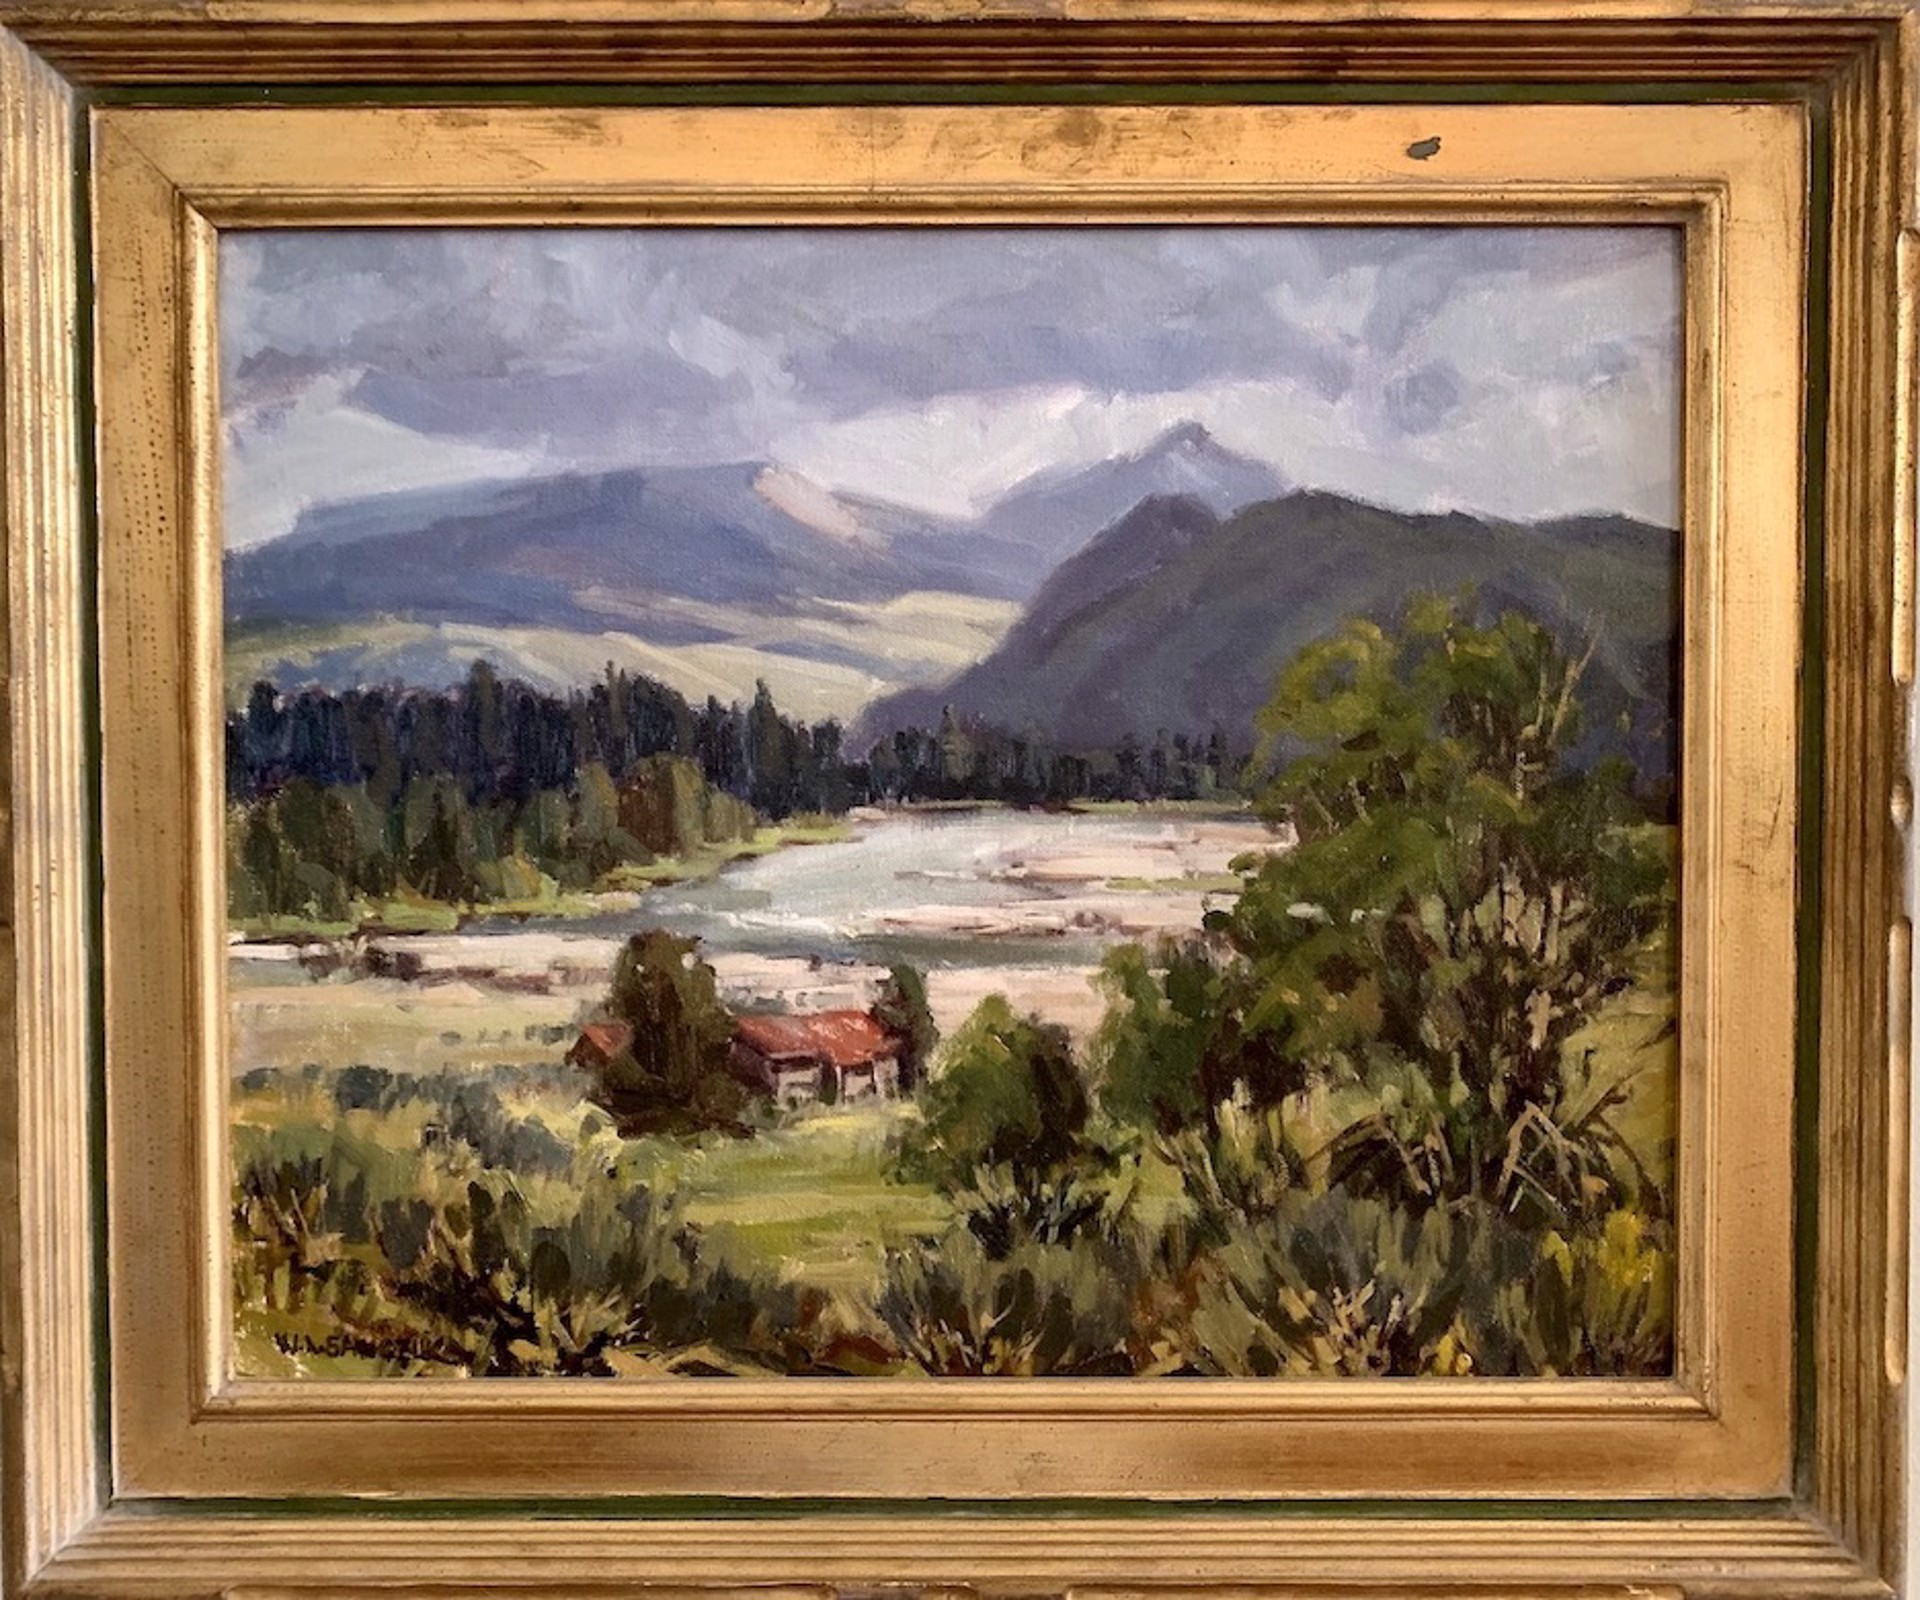 Teton Valley by William  "Bill" Sawczuk